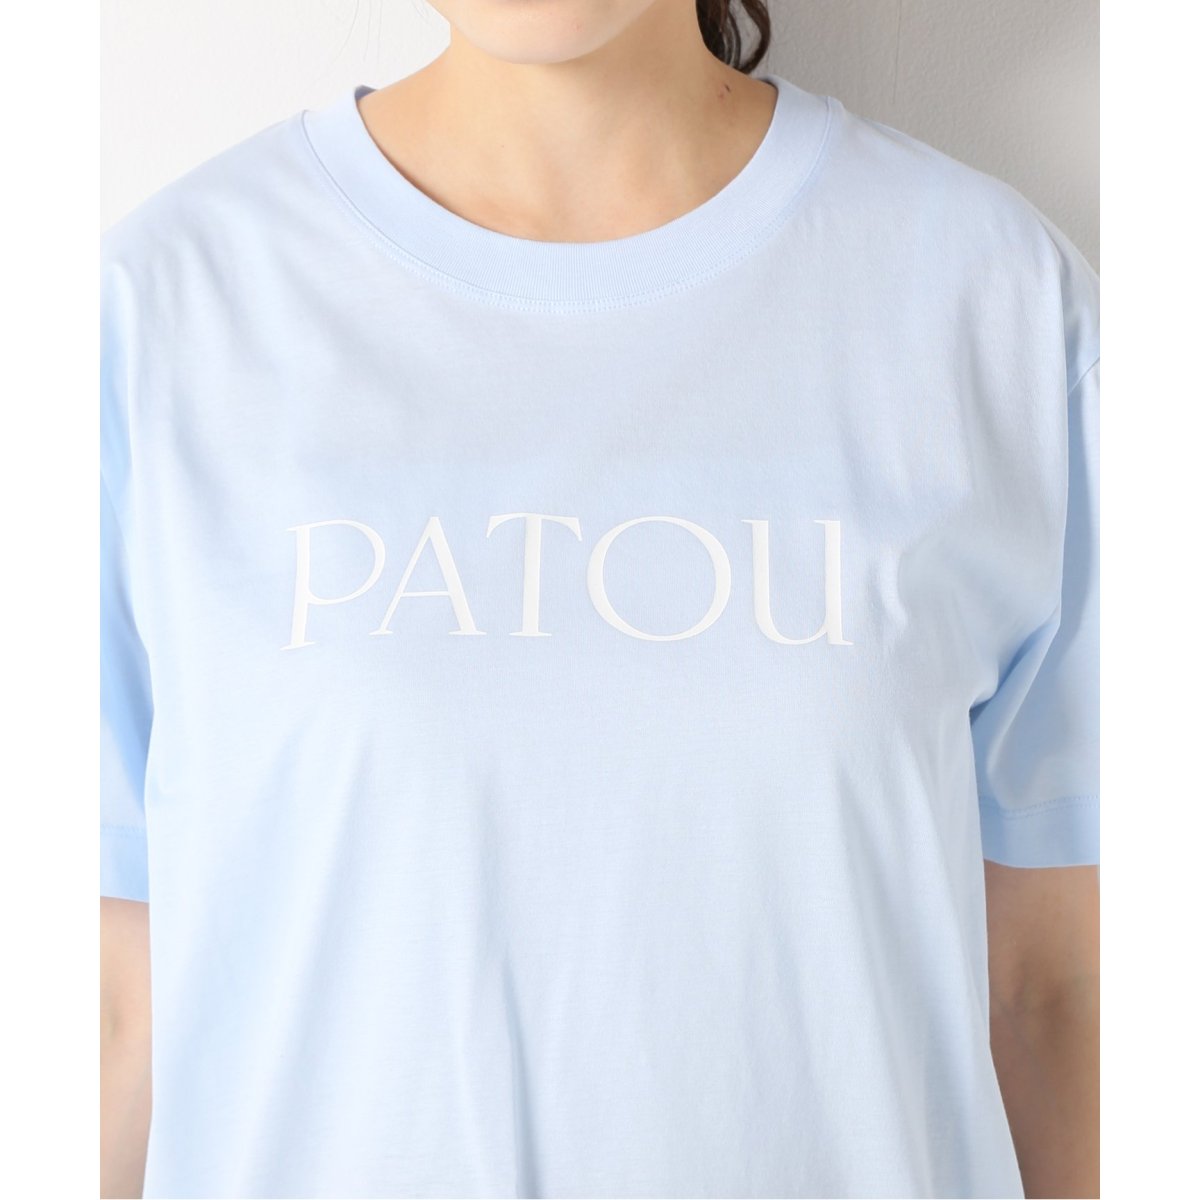 PATOU/パトゥ】 ESSENTIAL PATOU Tシャツ | イエナ(IENA